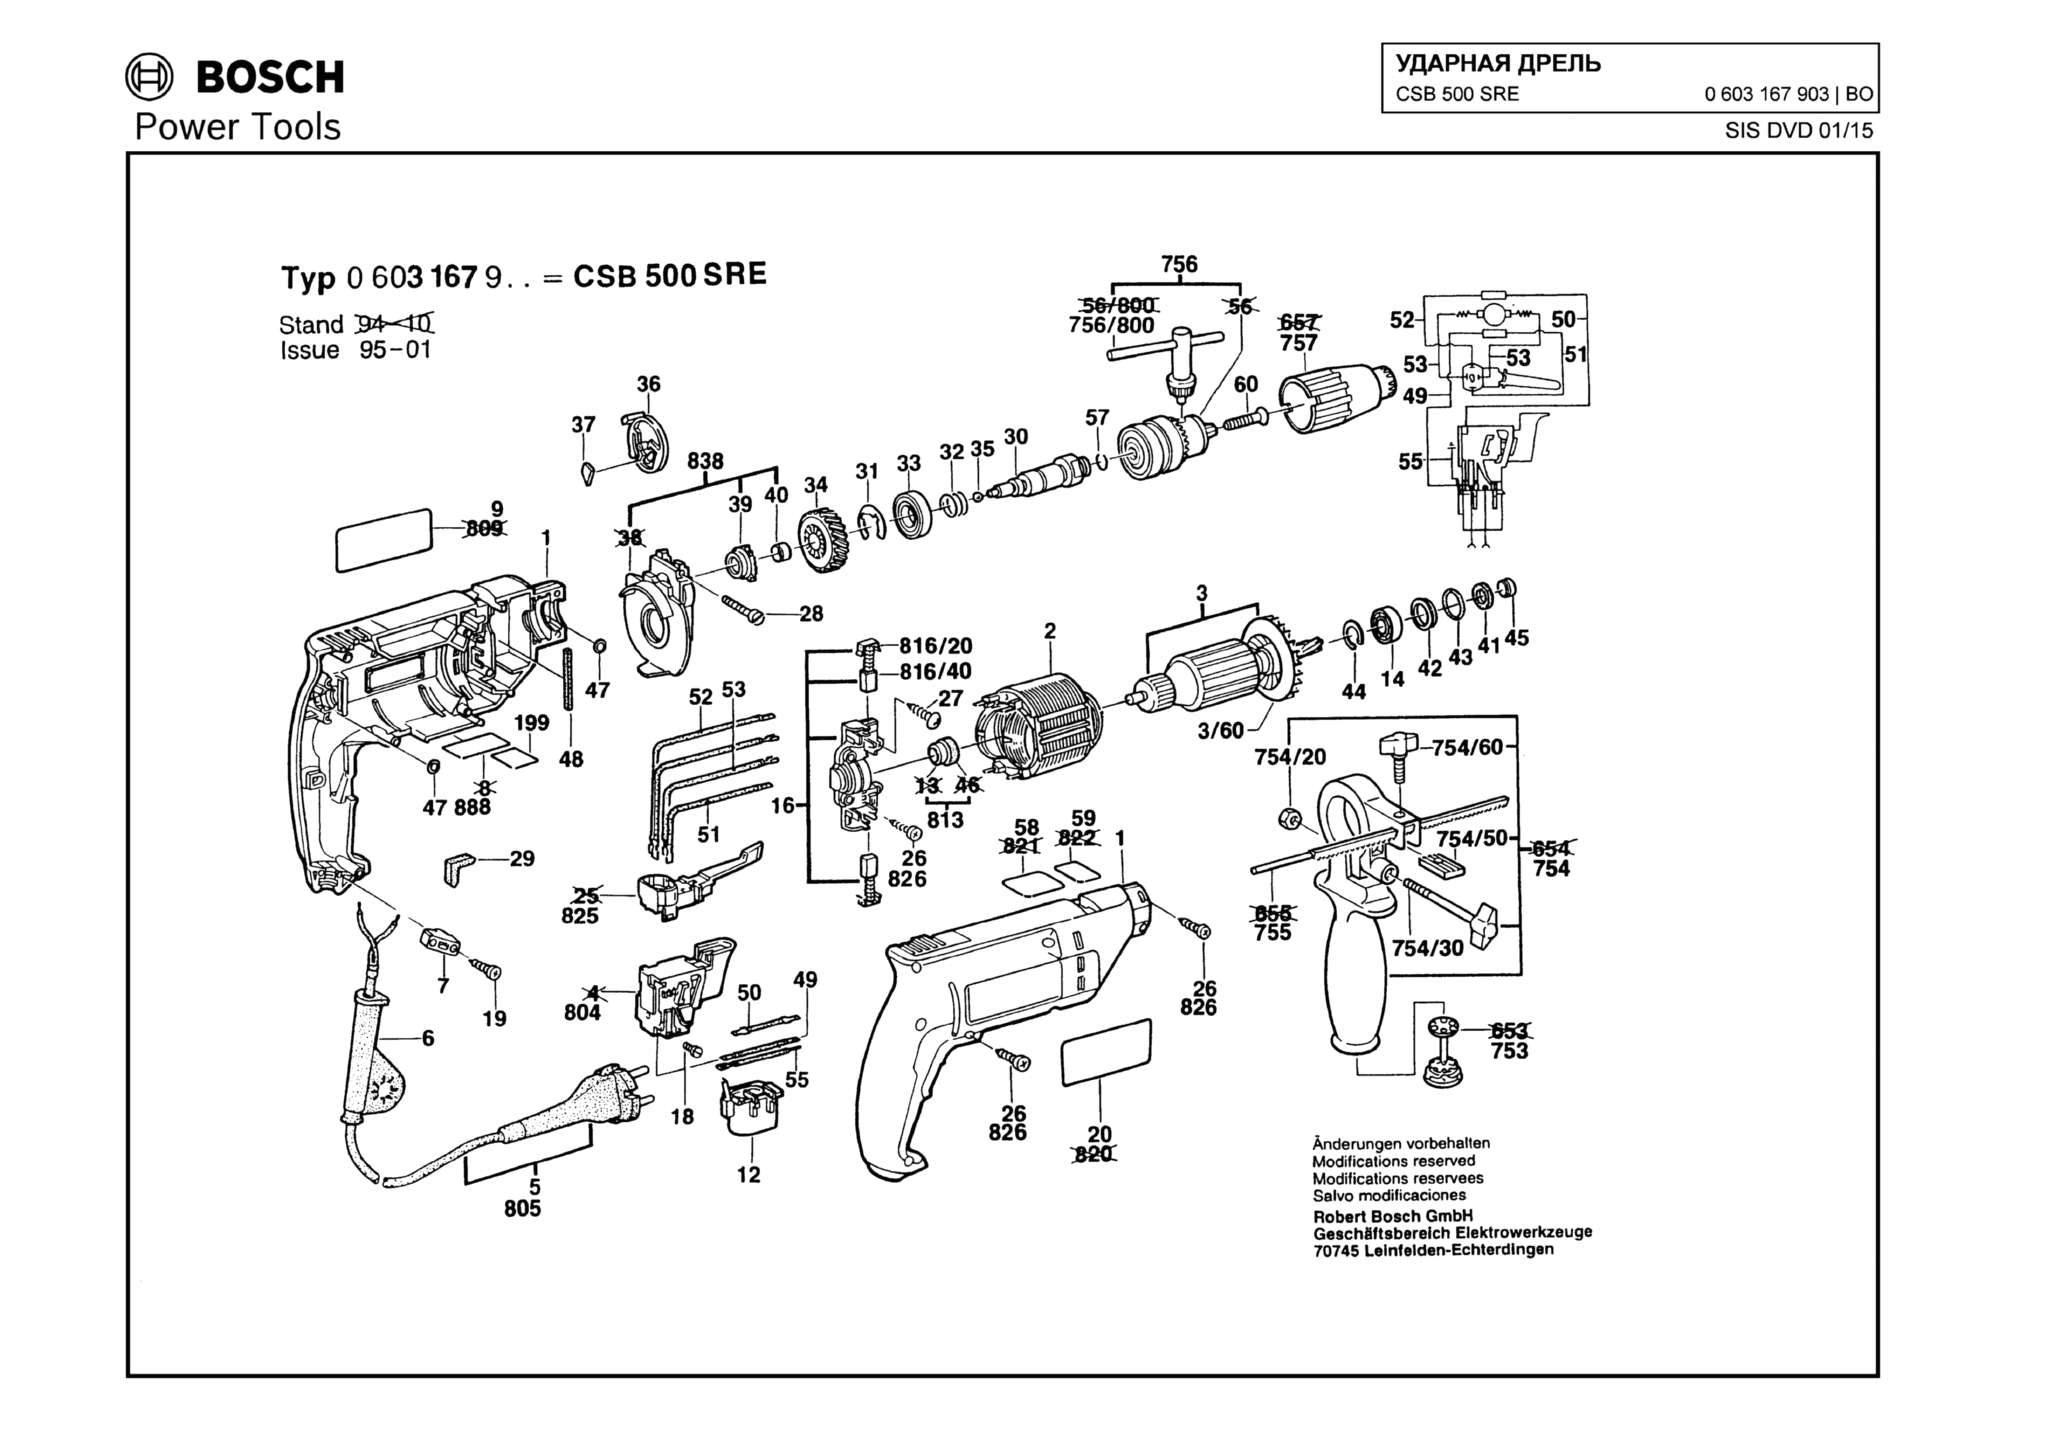 Запчасти, схема и деталировка Bosch CSB 500 SRE (ТИП 0603167903)